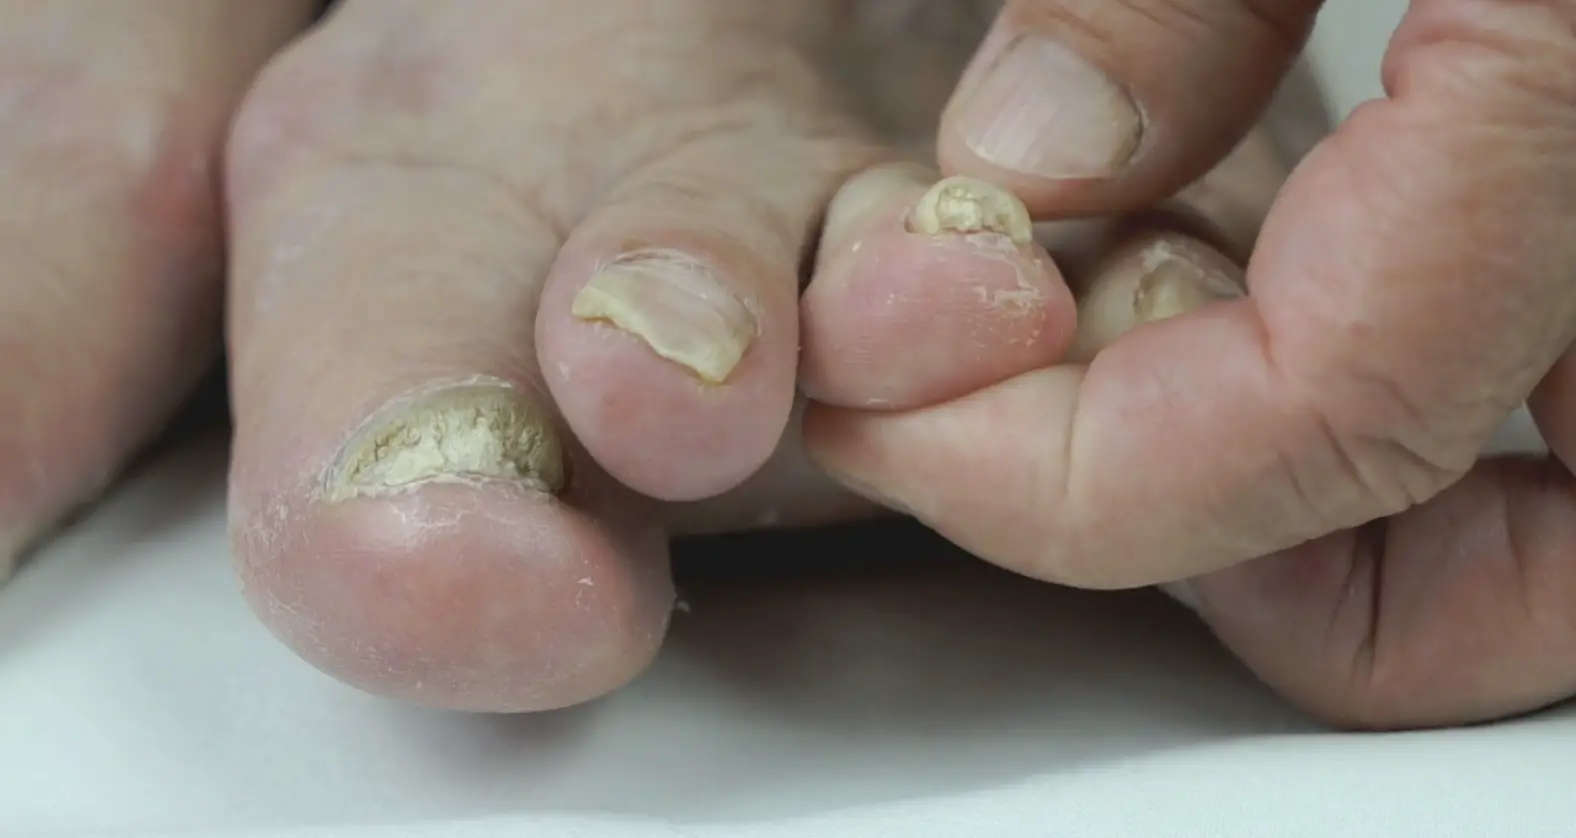 How to treat toe nail fungus